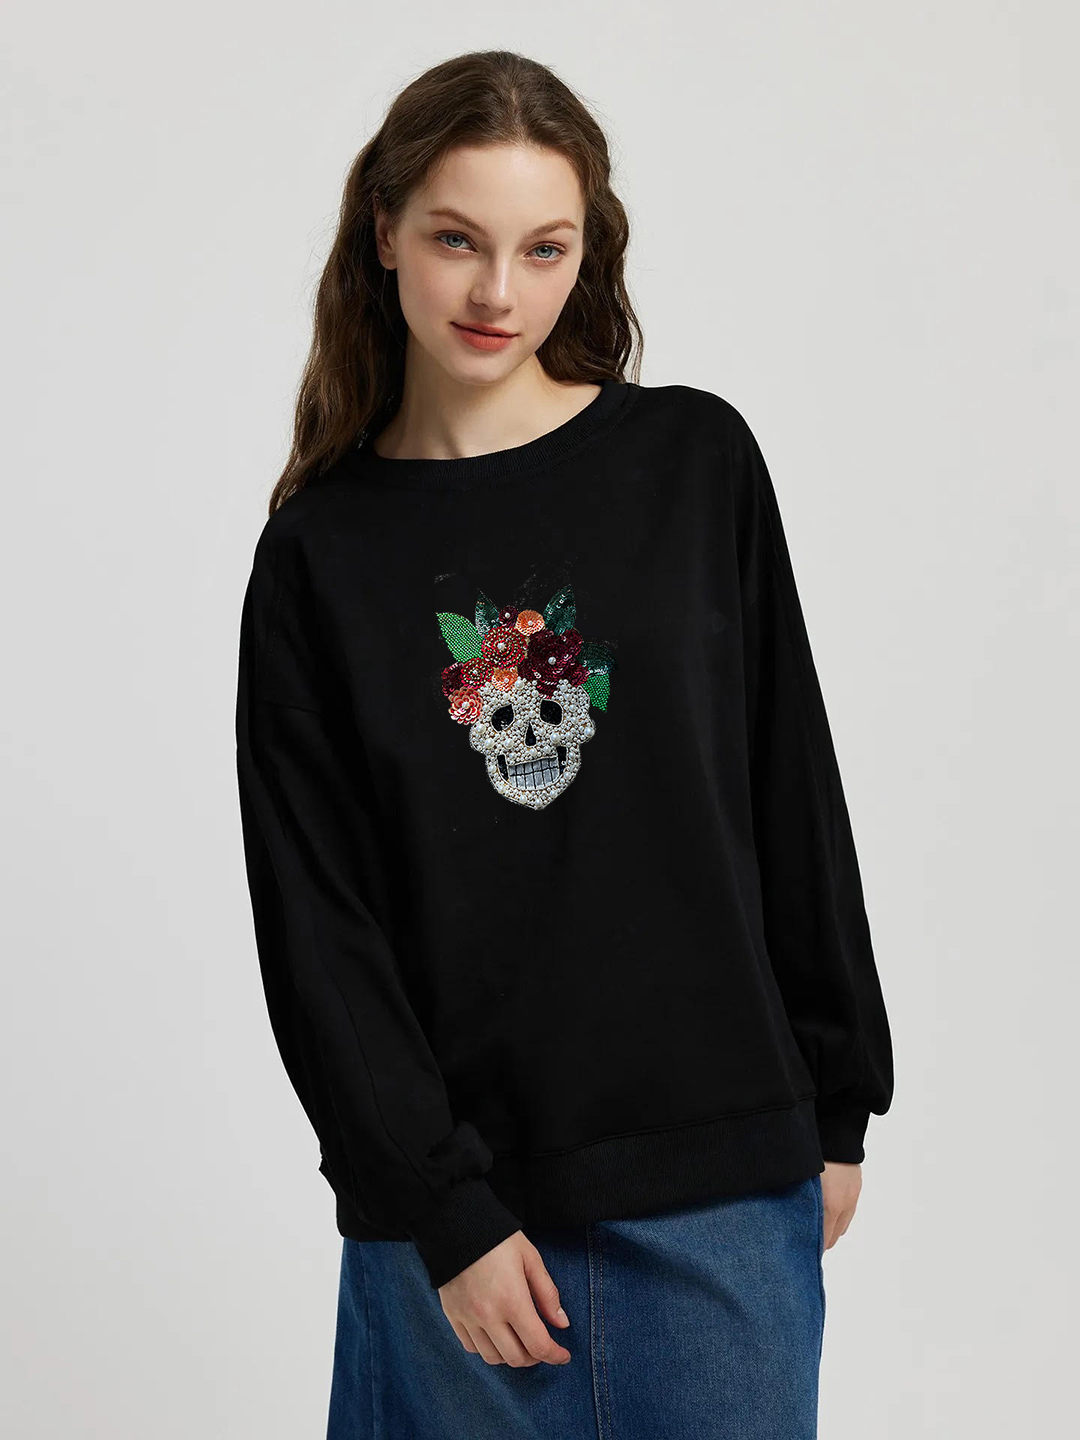 Sequinned Sweatshirt - Uptownie